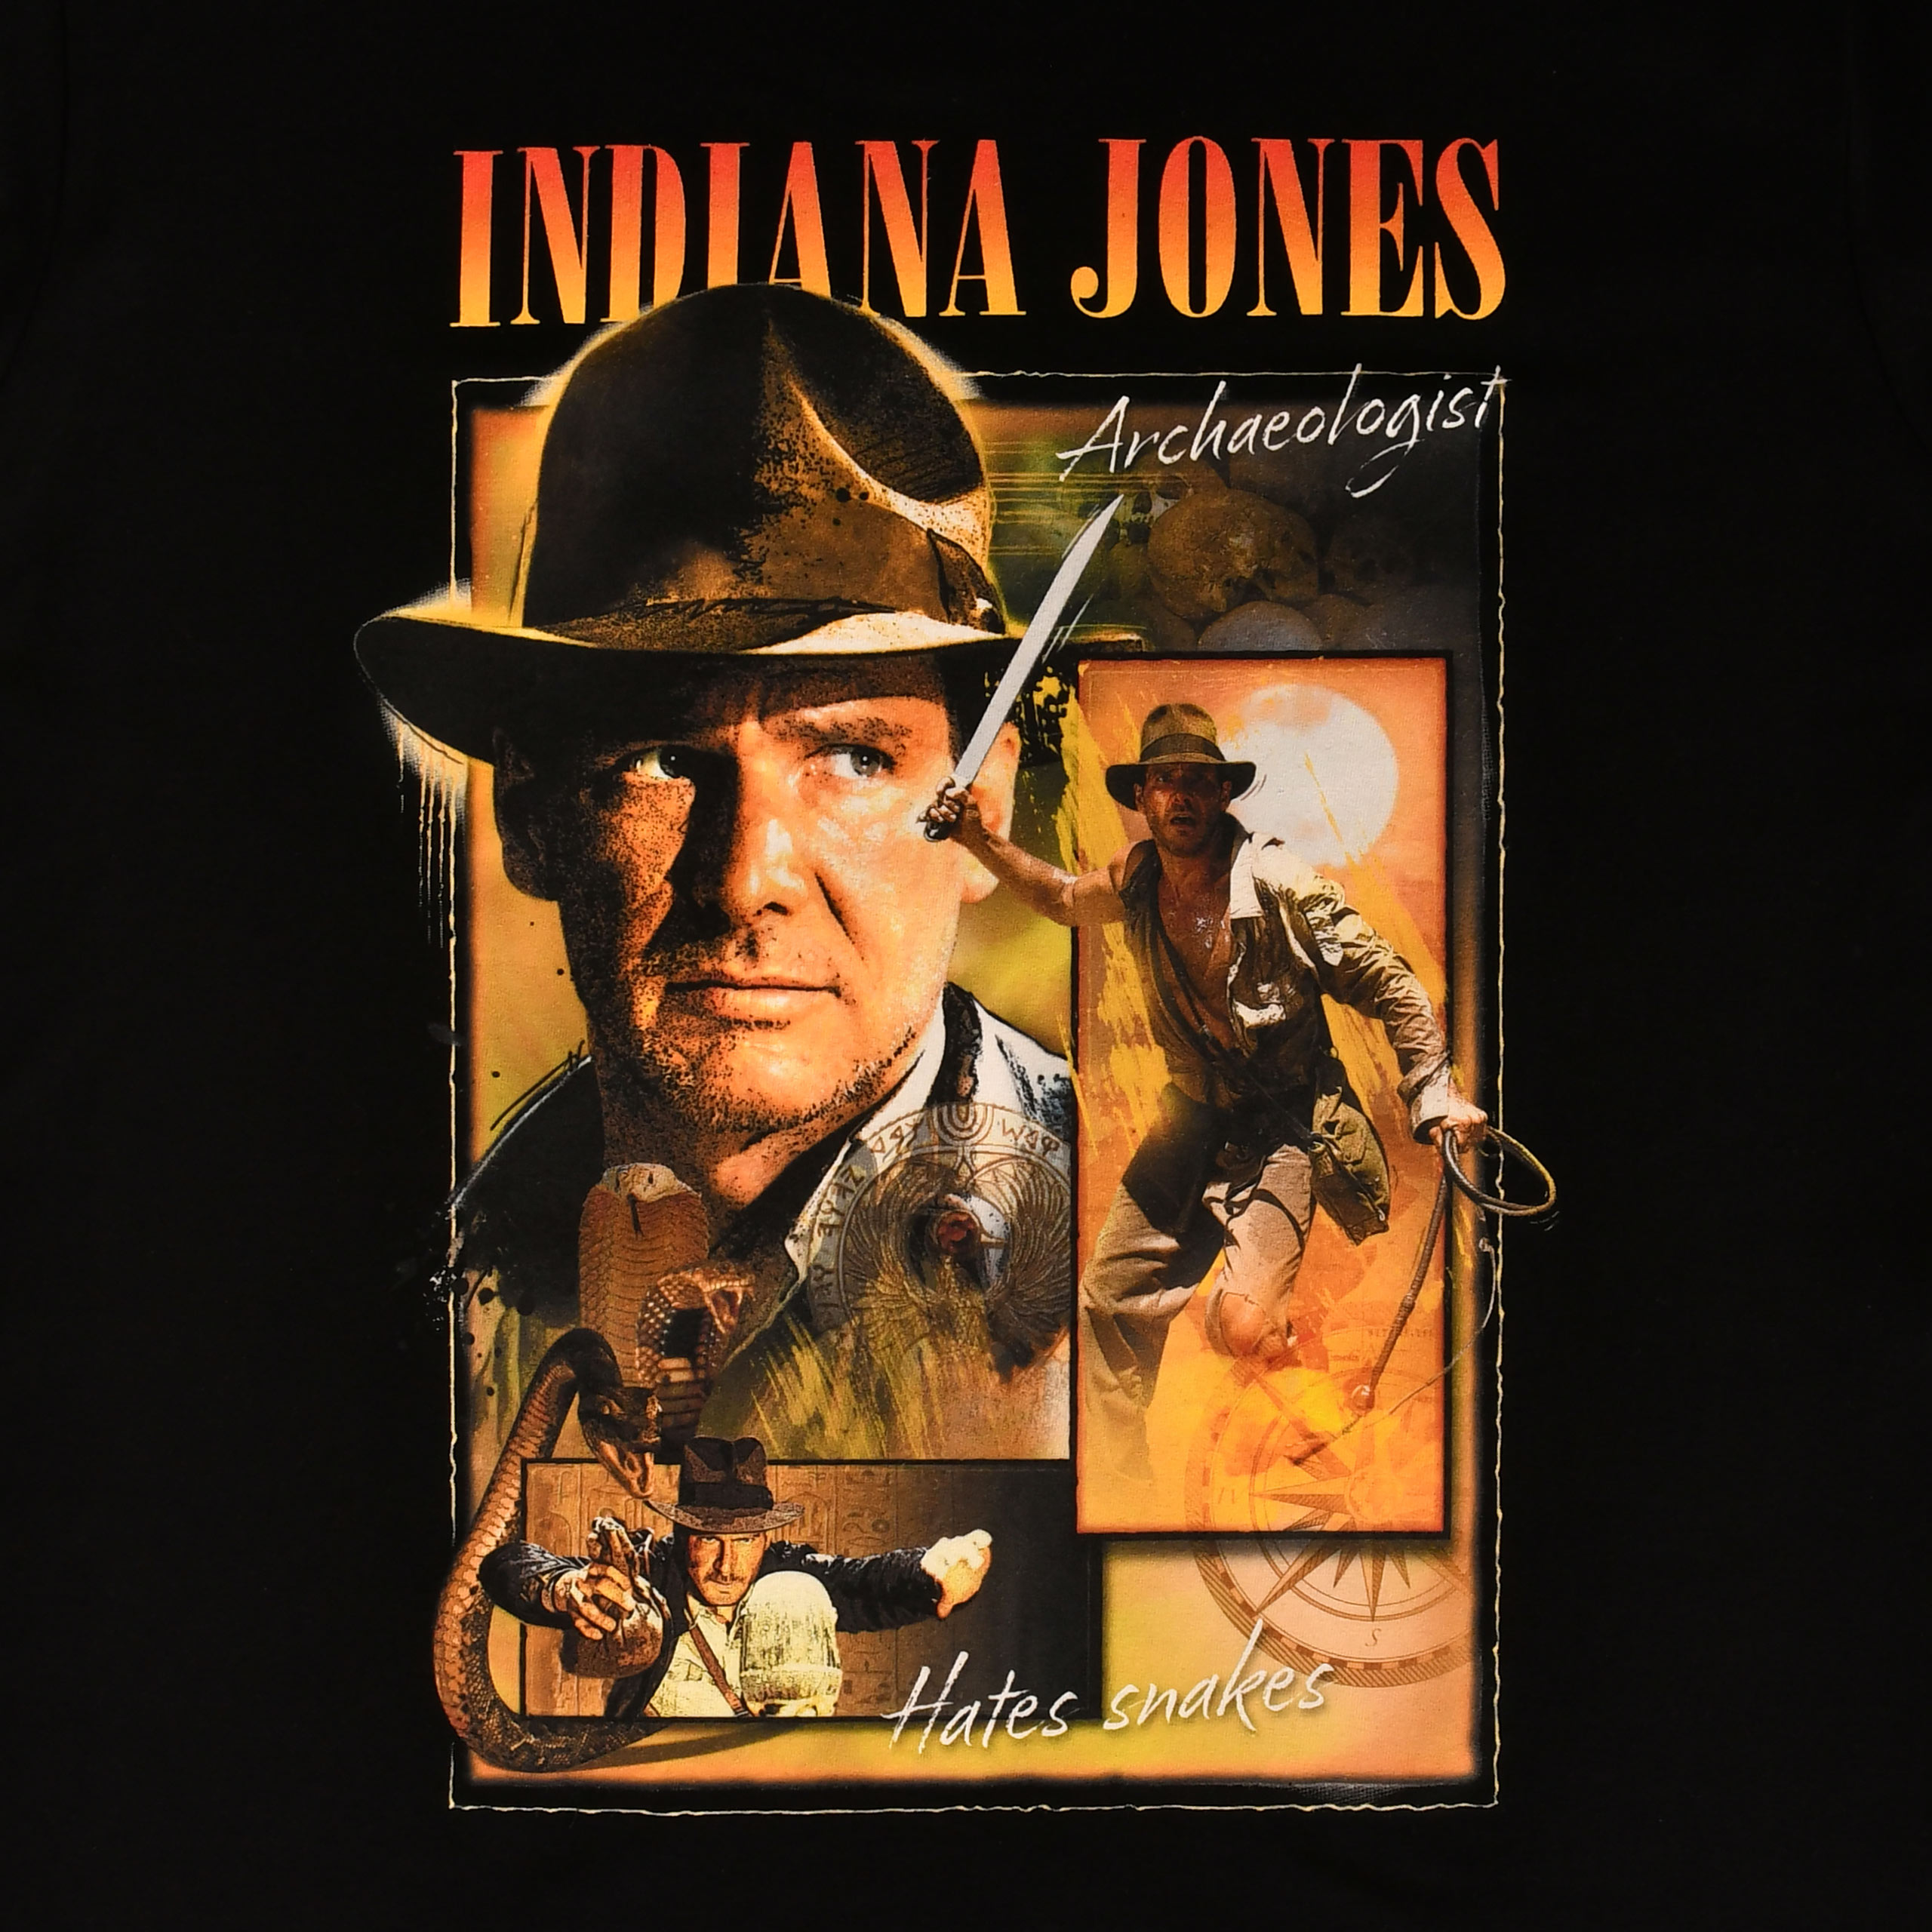 Indiana Jones - Homage T-Shirt schwarz